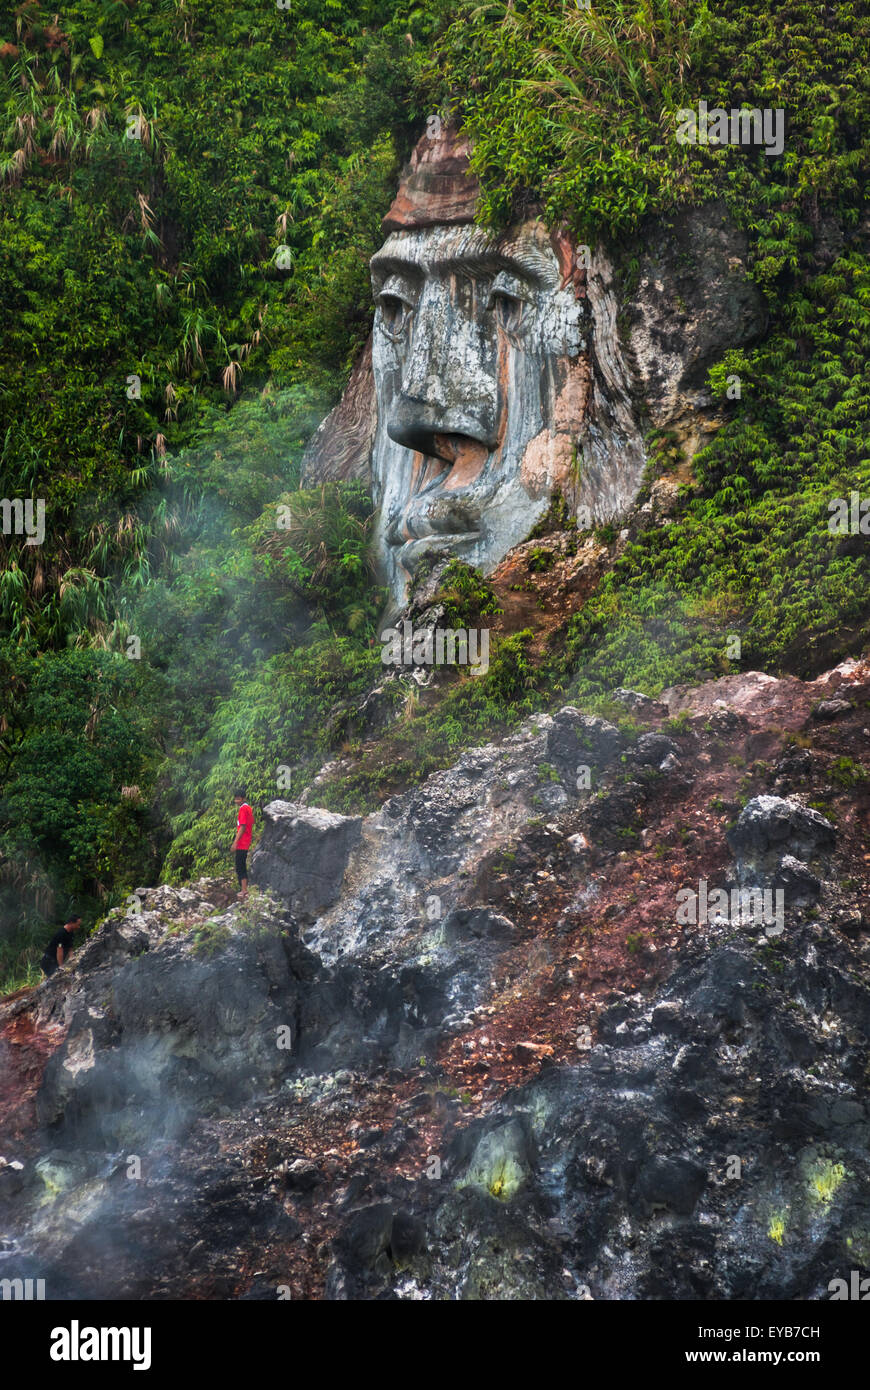 Un visitatore è avvistato vicino ad una formazione di faccia gigante che illustra il carattere di Toar (figura ancestrale) a Bukit Kasih nel Nord Sulawesi, Indonesia. Foto Stock